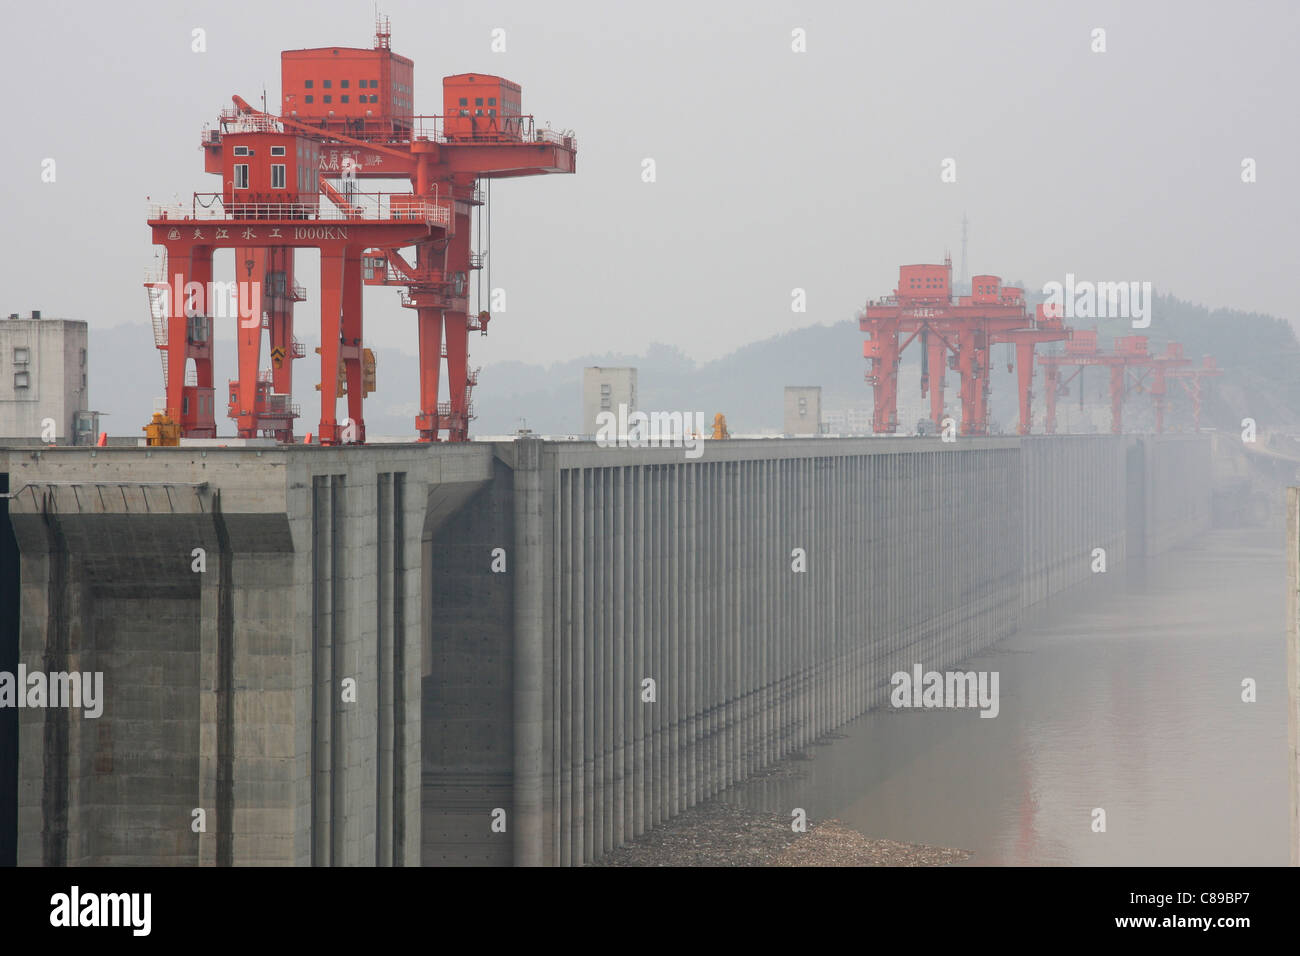 A hazy day at the Three Gorges Dam, Yangtze River, China Stock Photo